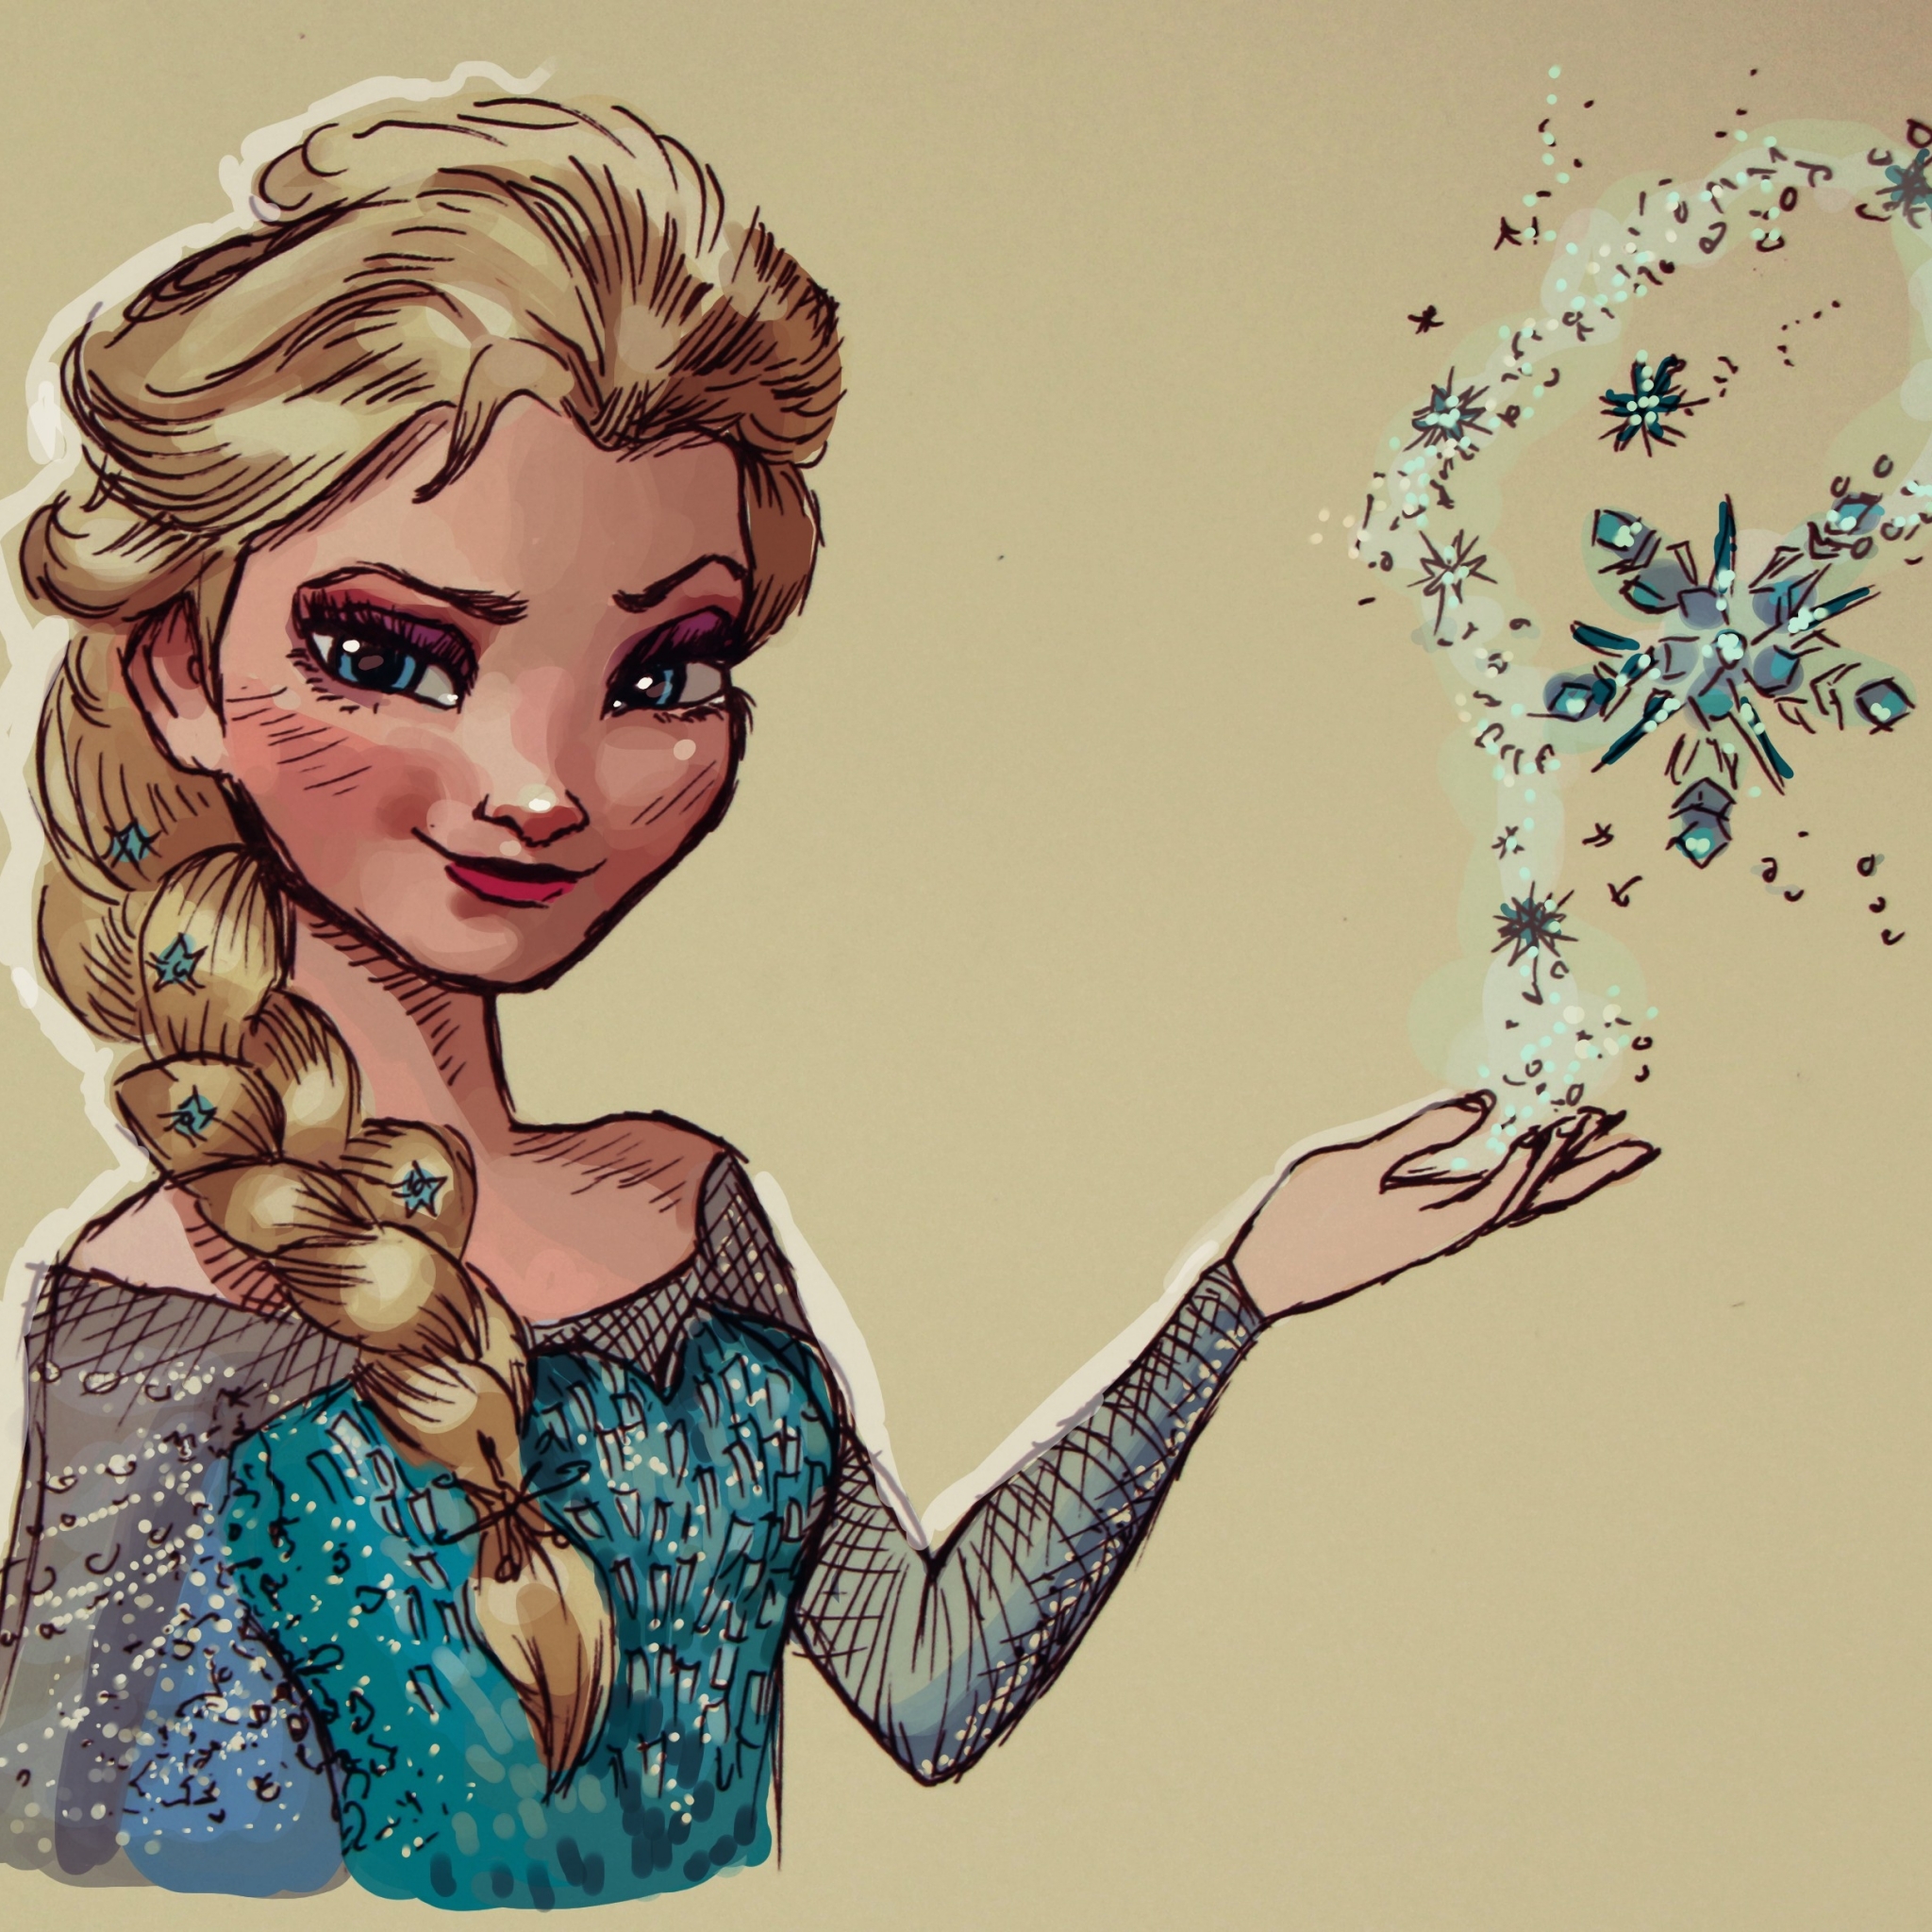 Descarga gratuita de fondo de pantalla para móvil de Nieve, Películas, Frozen: El Reino Del Hielo, Congelado (Película), Ana (Congelada), Elsa (Congelada).